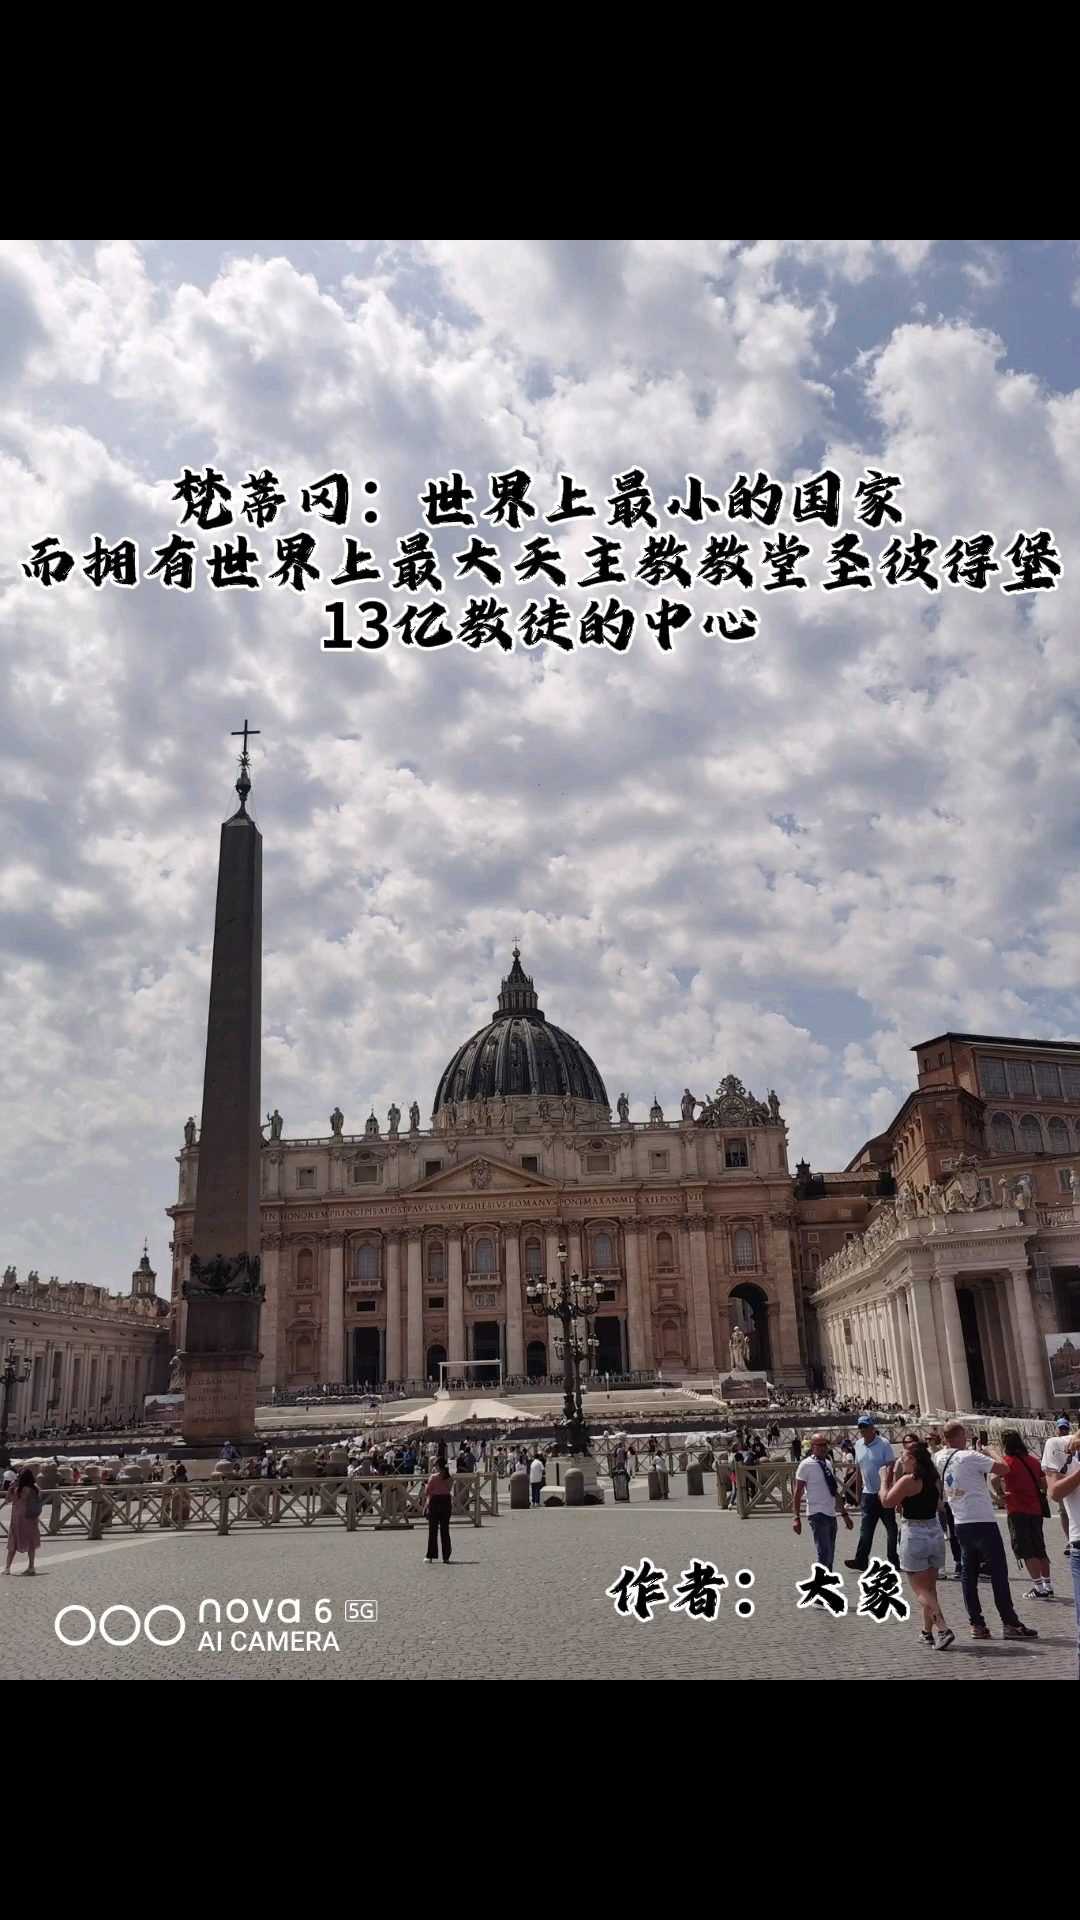 世界上最小的国家,袖珍的梵蒂冈,浩瀚的文化瑰宝